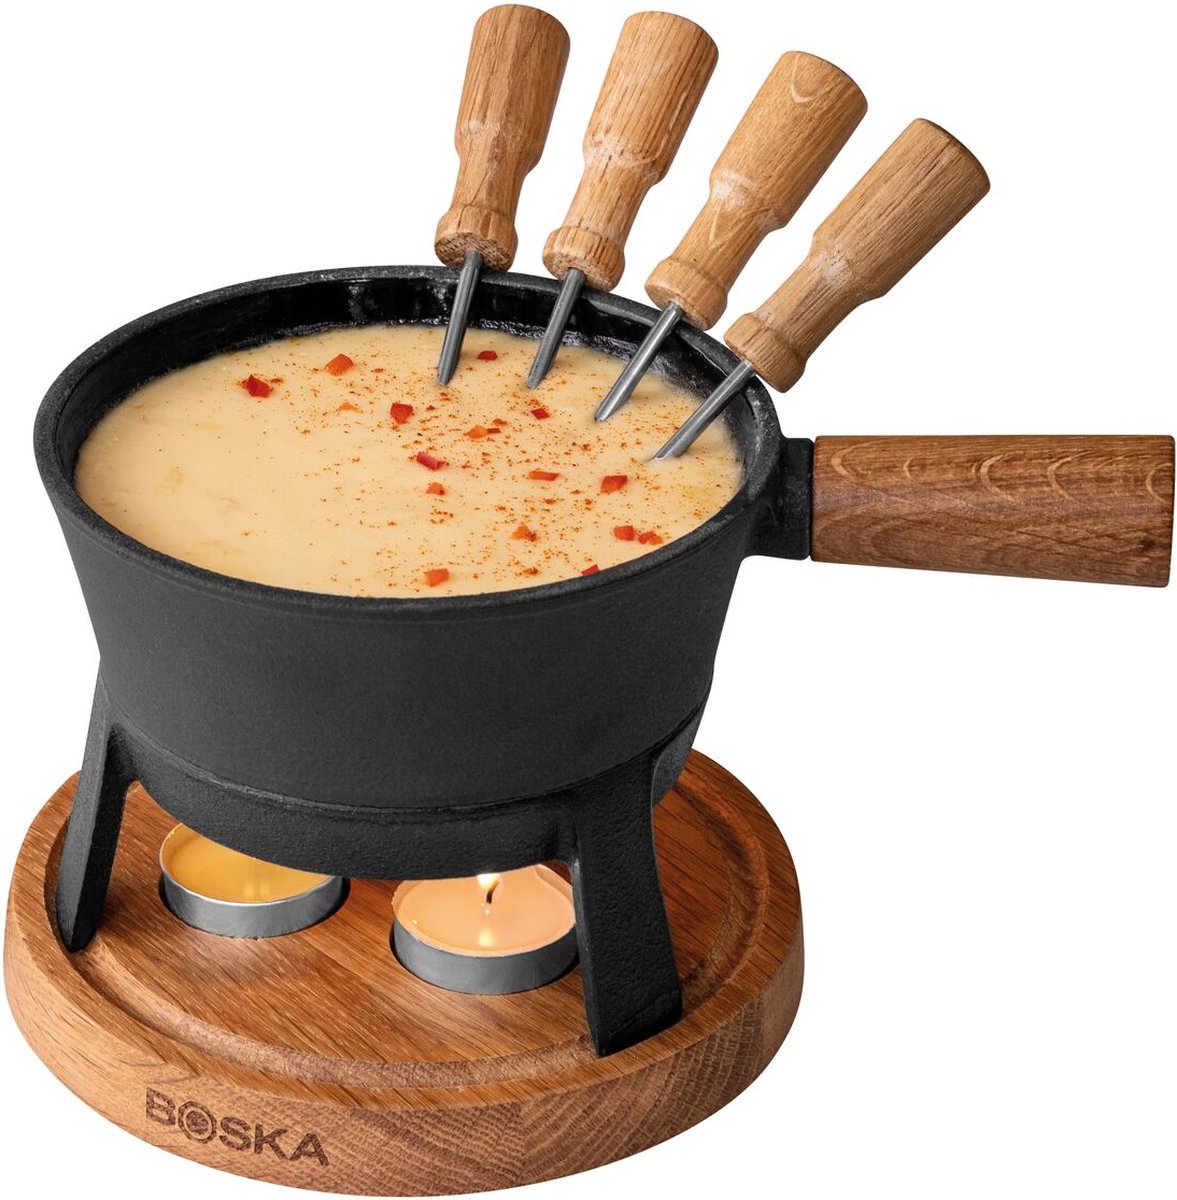 Boska Fondueset Pro S - Kaas fondue - voor 350 gram Kaas - 700 ml - Boska